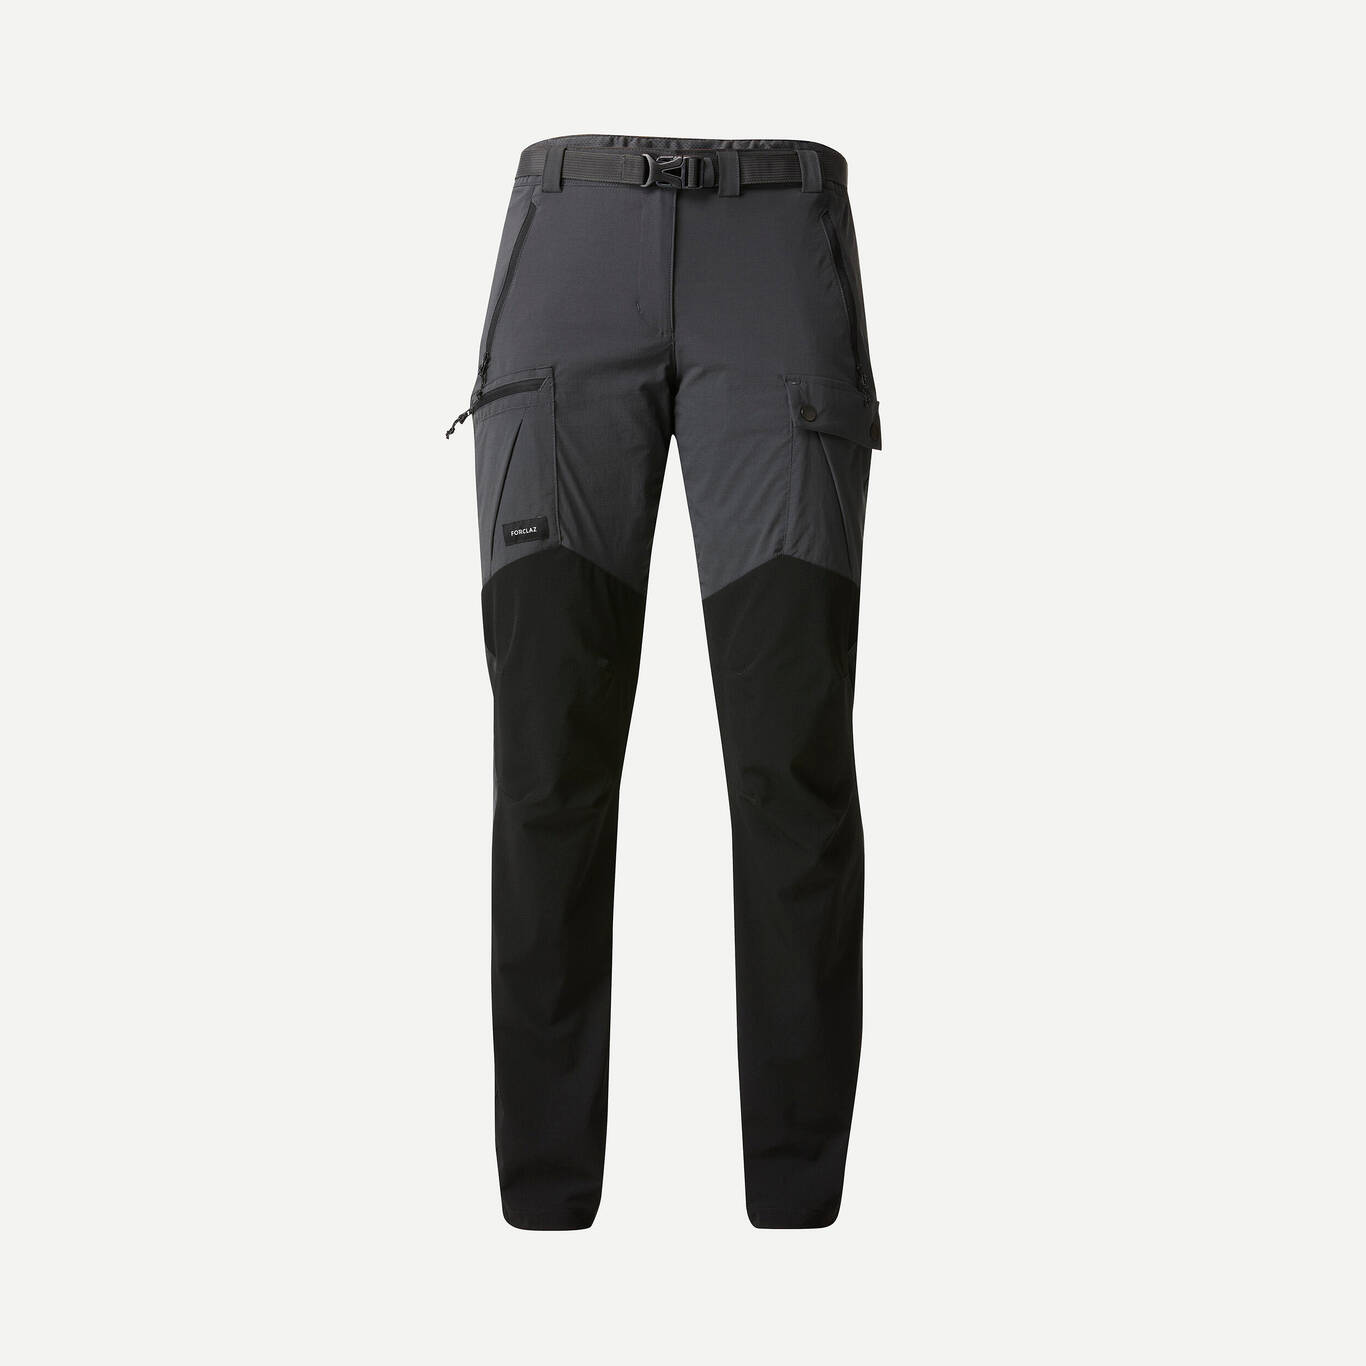 Women’s Mountain Trekking Trousers - MT500